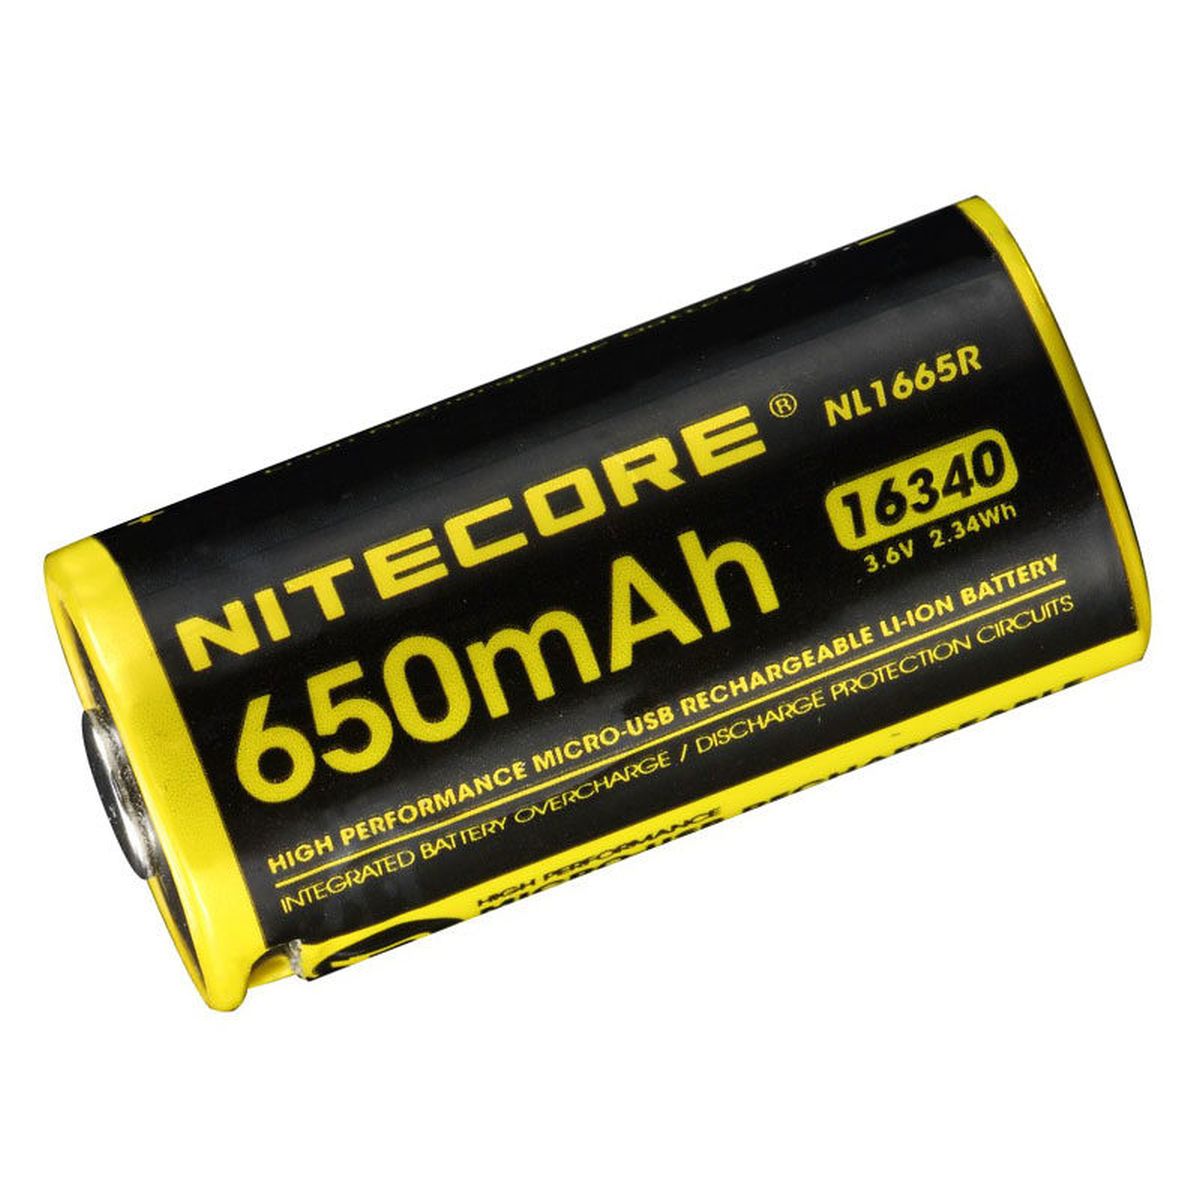 Nitecore NL1665R (650 mAh) 16340